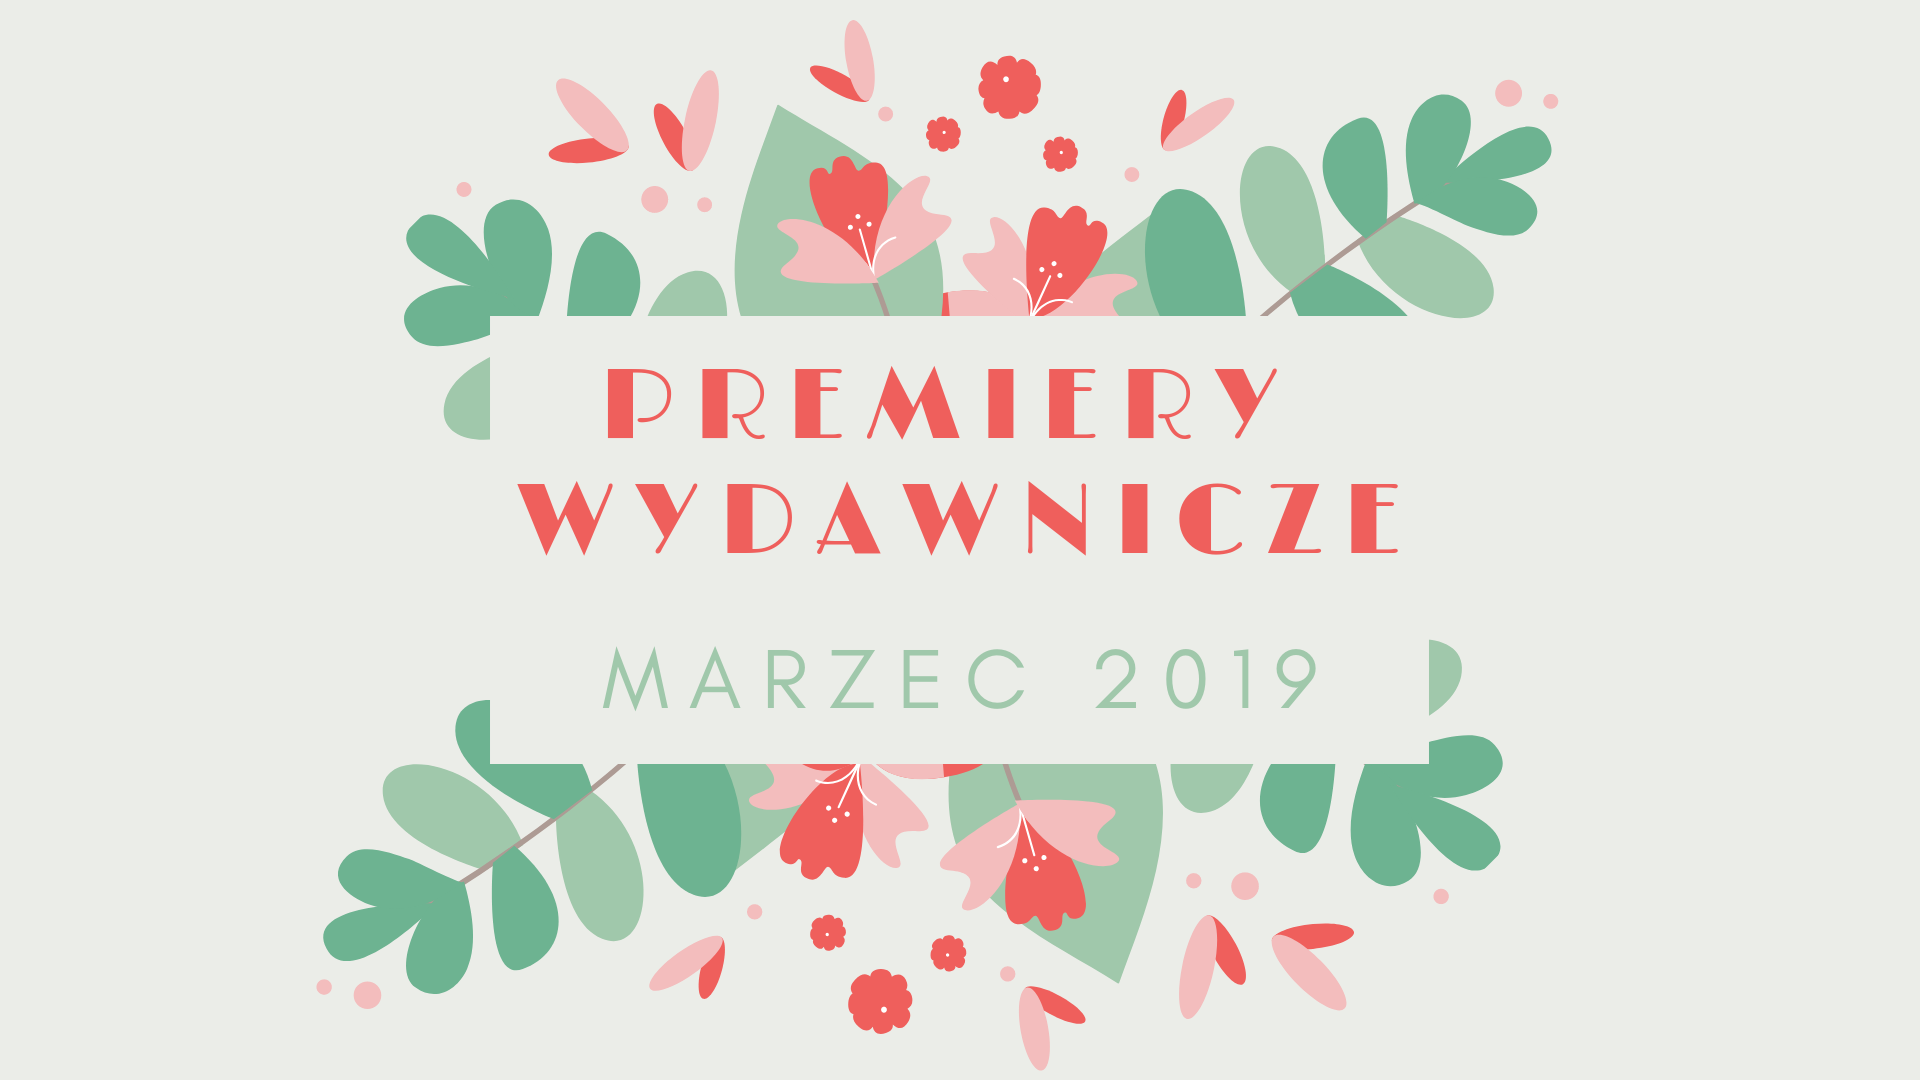 Premiery wydawnicze – marzec 2019